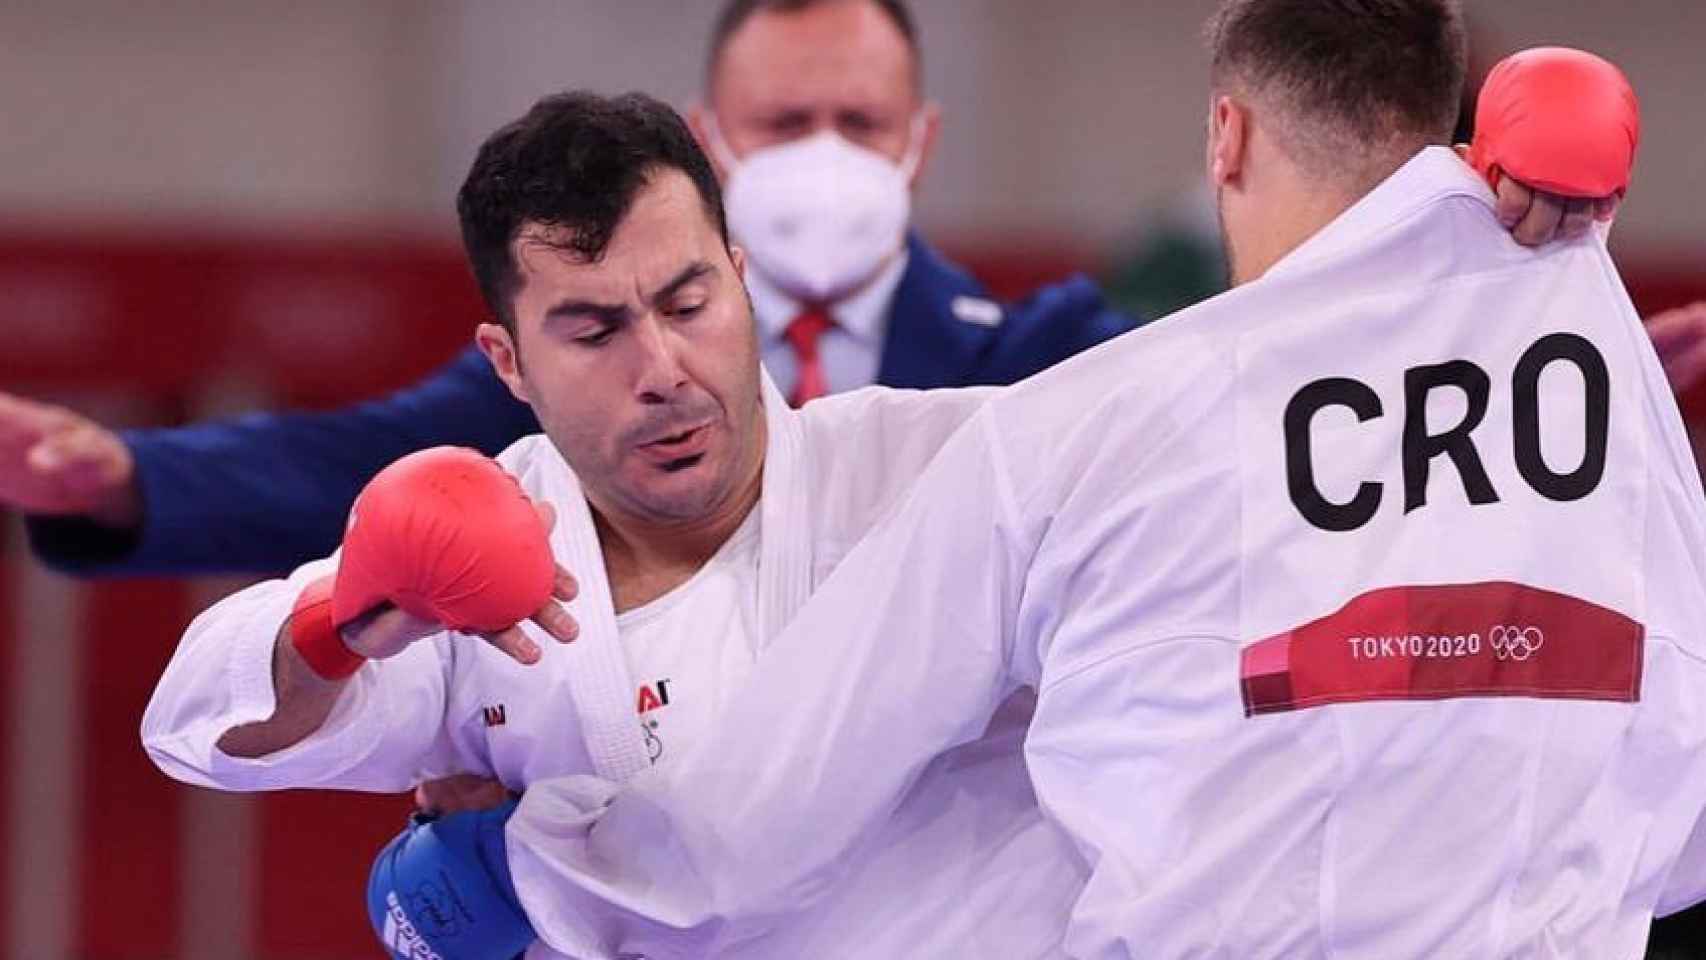 Sajjad Ganjzadeh compitiendo contra el karateca croata en los JJOO de Tokio 2020